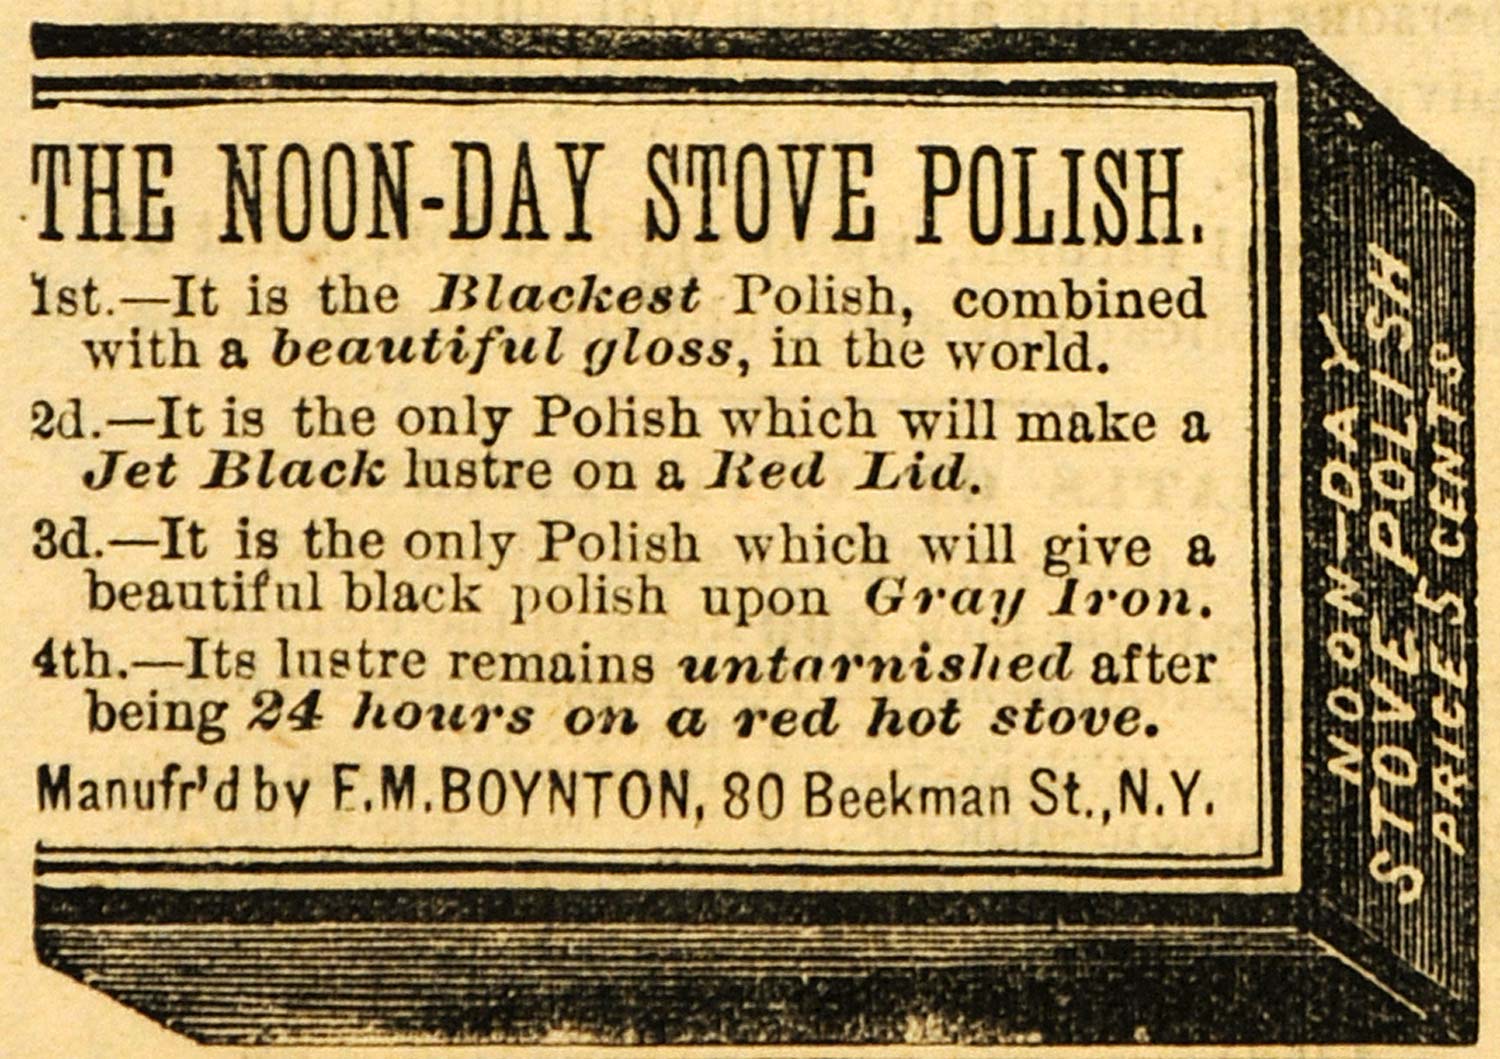 1882 Ad Noon-Day Stove Black Polish F. M. Boynton NY - ORIGINAL ADVERTISING TIN6